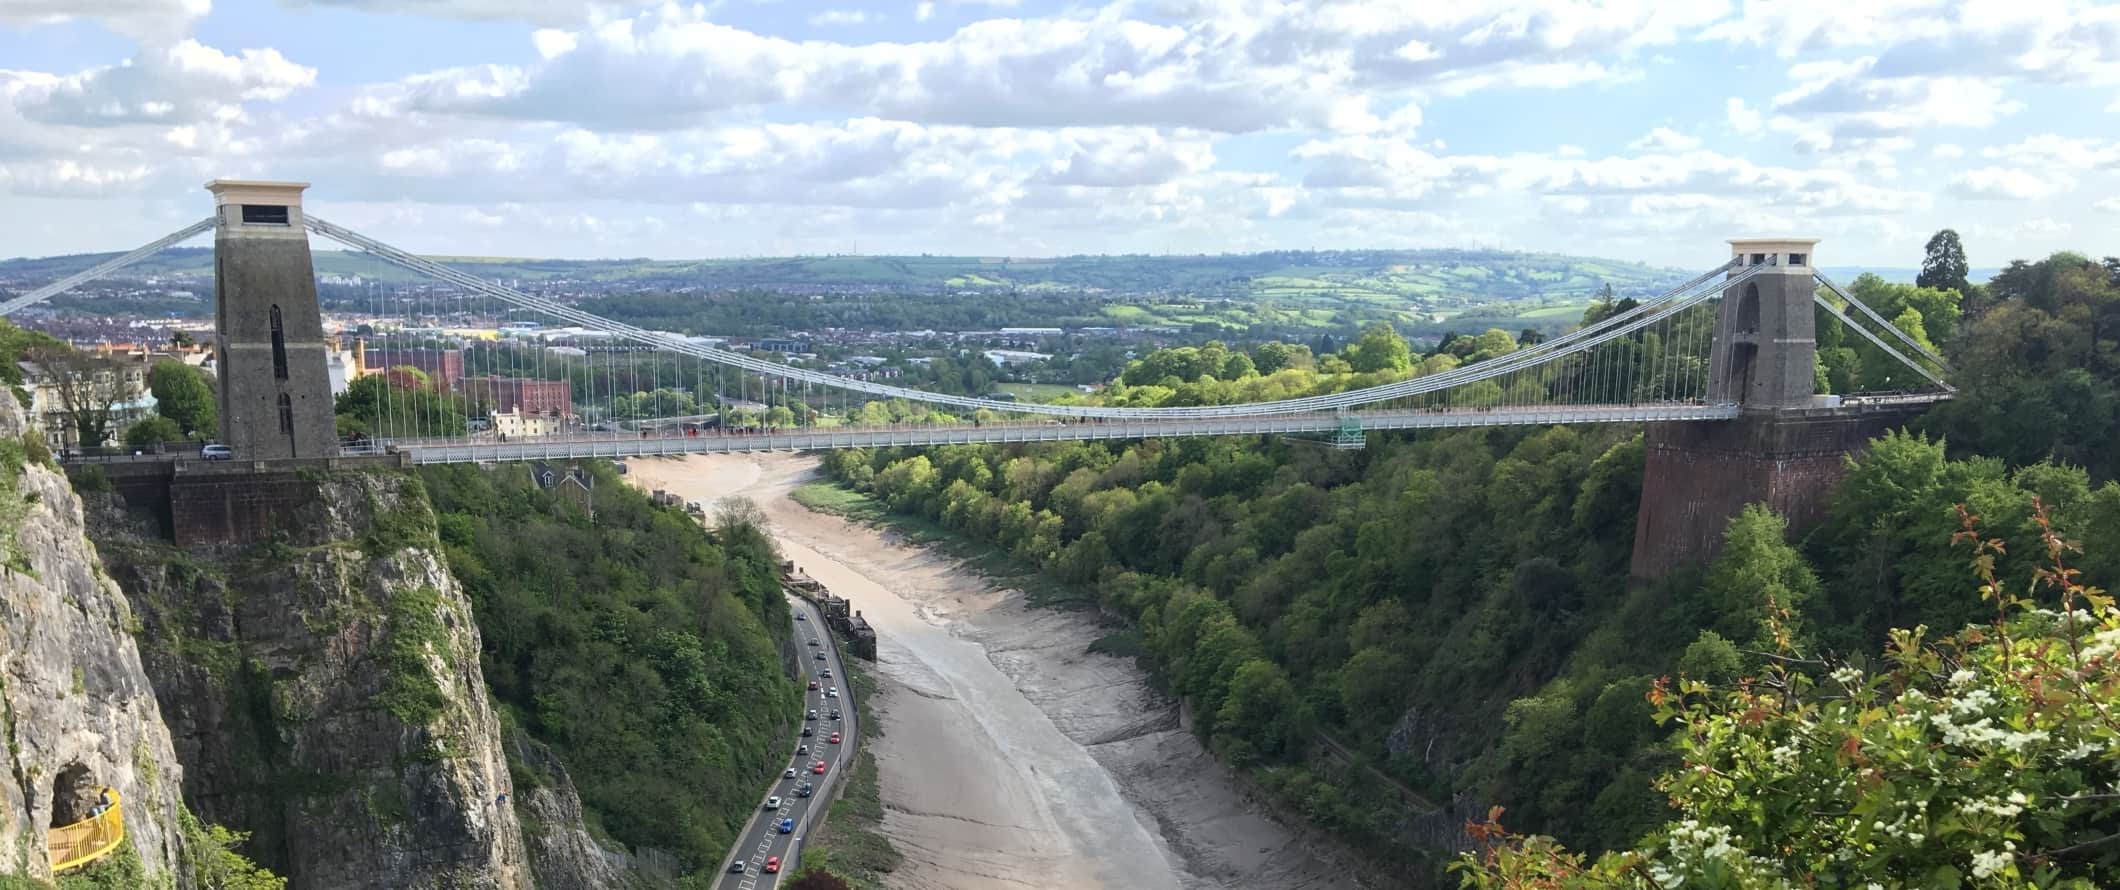 Vista da ponte suspensa de Clifton sobre o rio em Bristol, Inglaterra